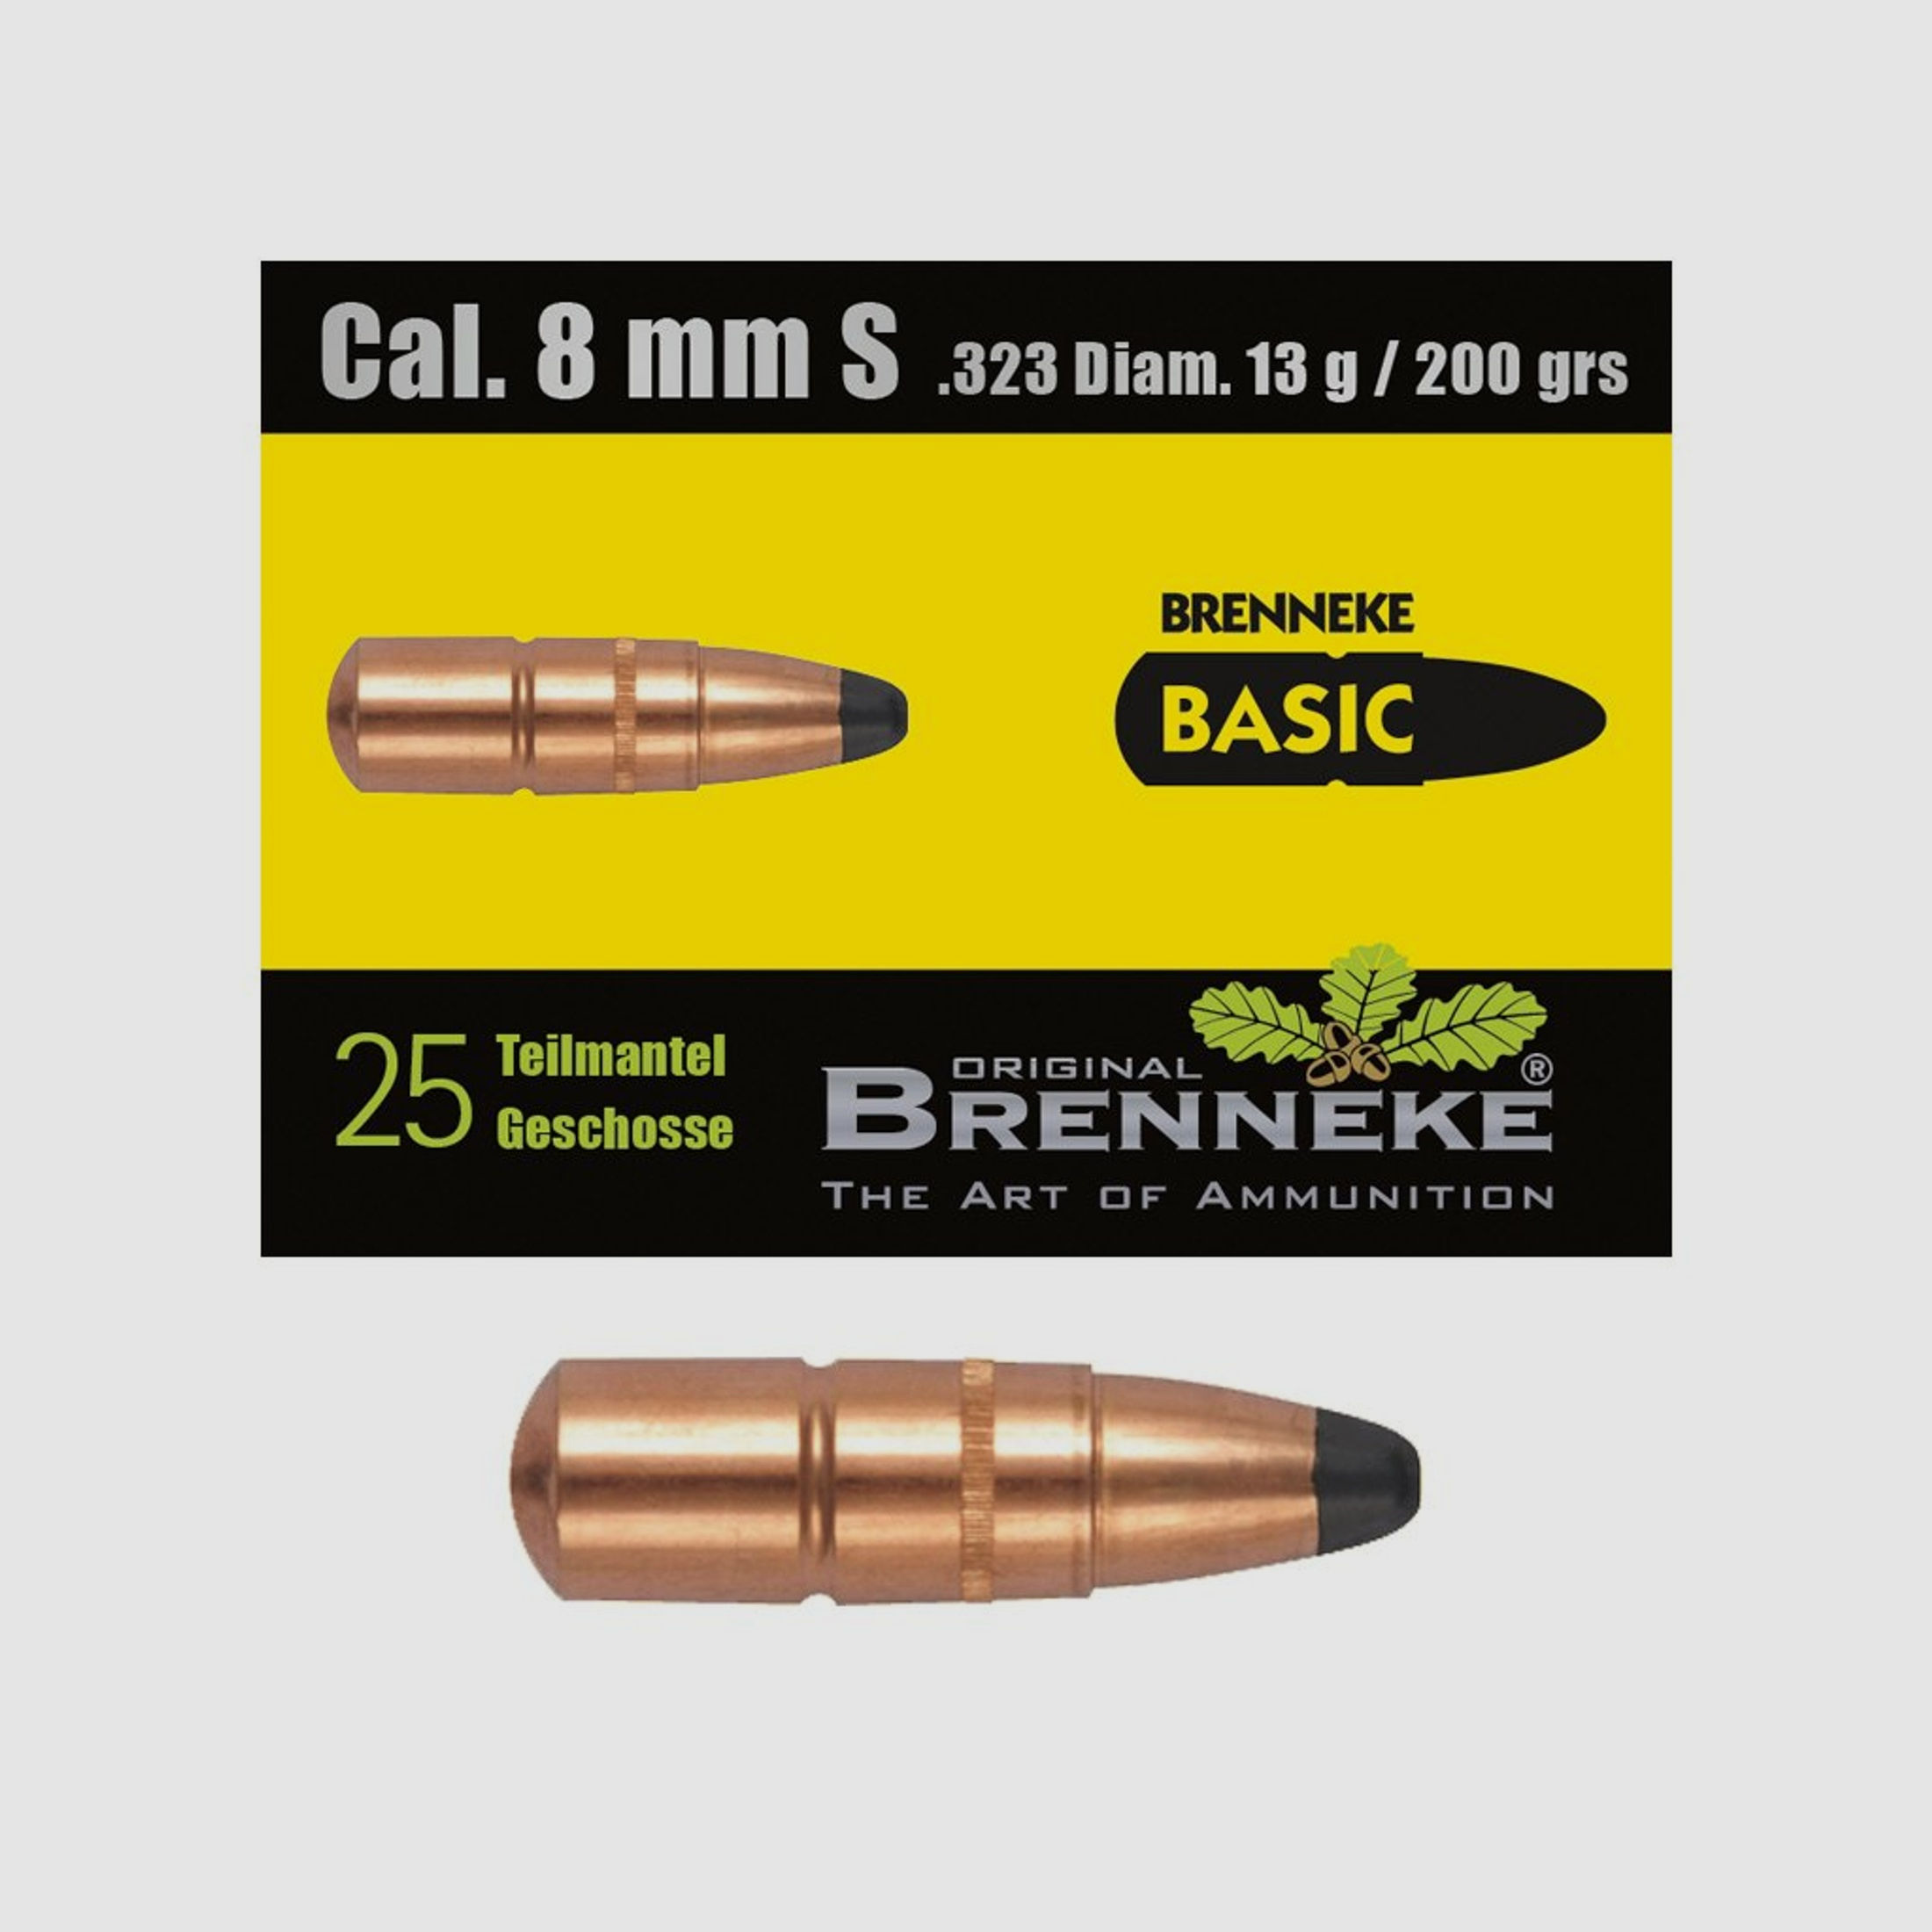 BRENNEKE Geschoss 8 mm S / .323 Diam. BASIC